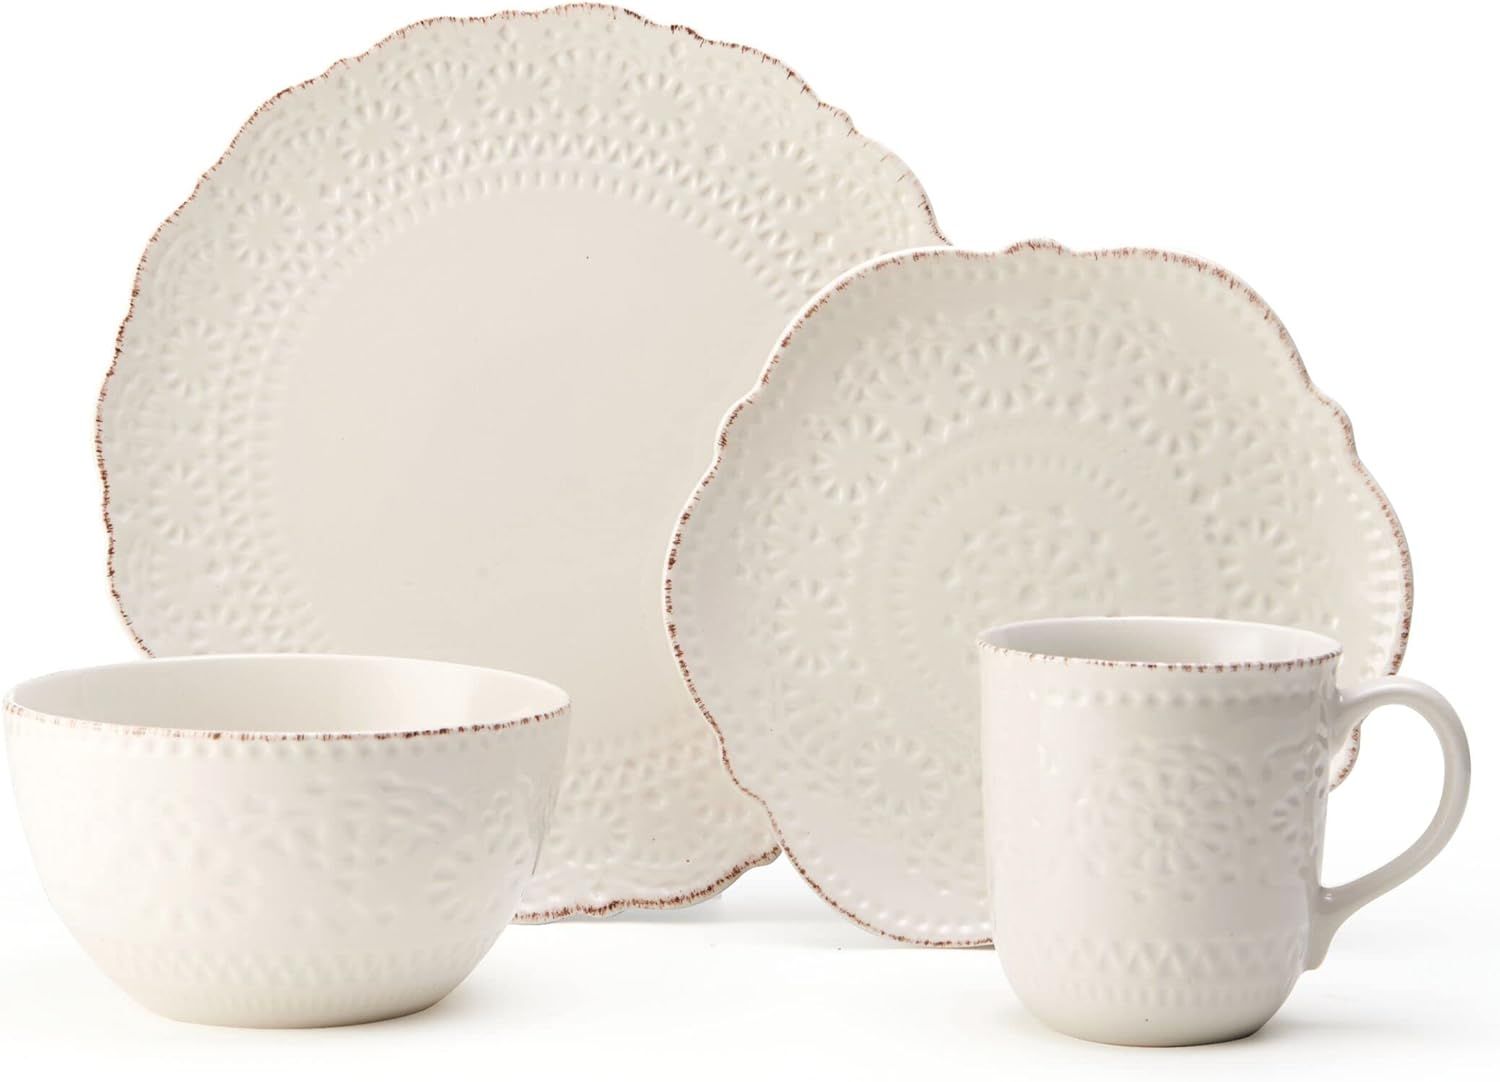 Pfaltzgraff 5143149 Chateau Cream 16-Piece Stoneware Dinnerware Set, Service for 4, Off White | Amazon (US)